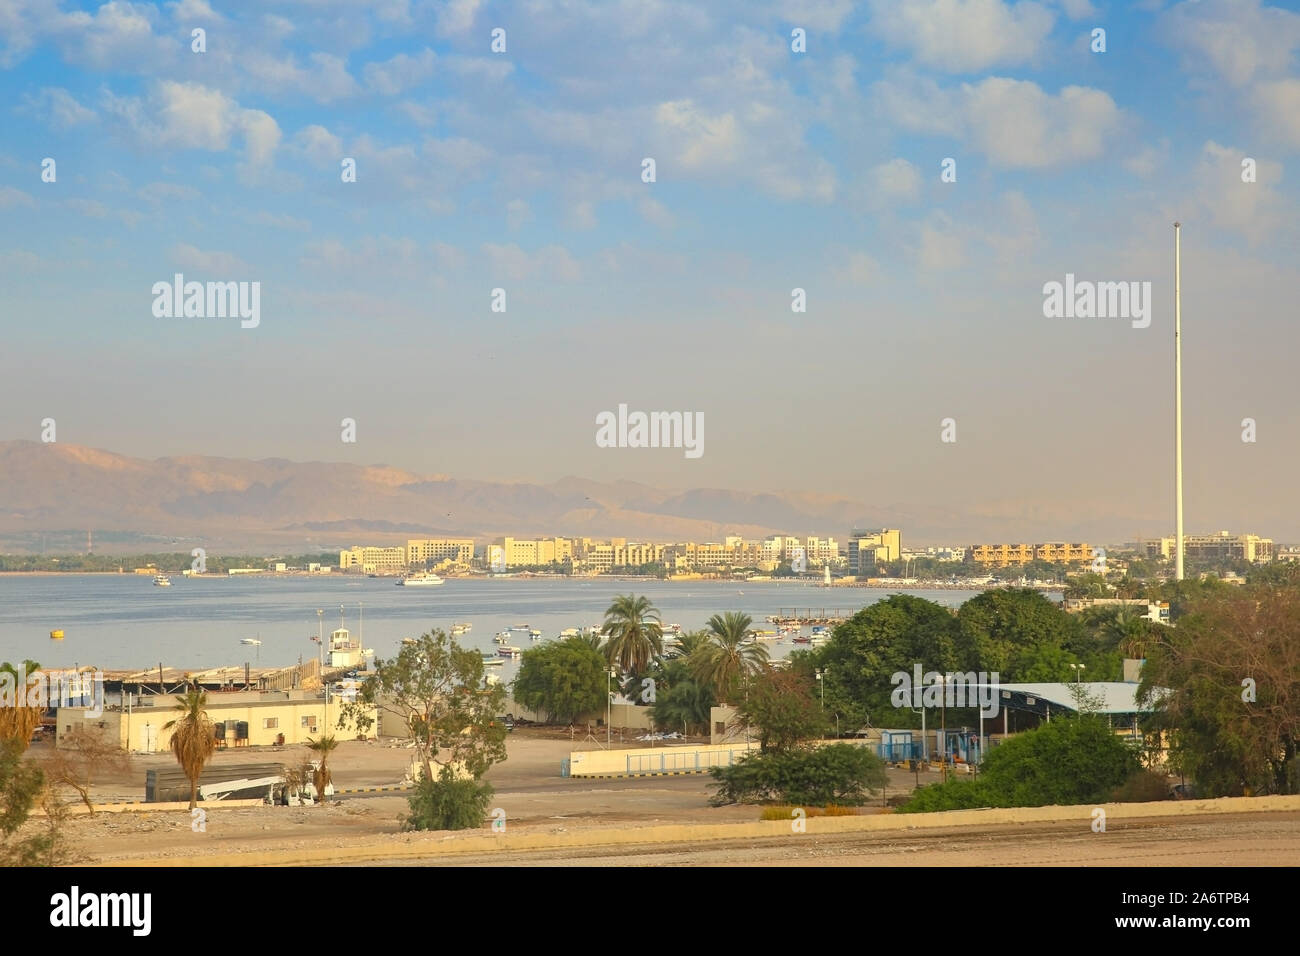 Vue de la ville portuaire d'Aqaba, en Jordanie. Bâtiments le long du littoral avec des montagnes en arrière-plan. Banque D'Images